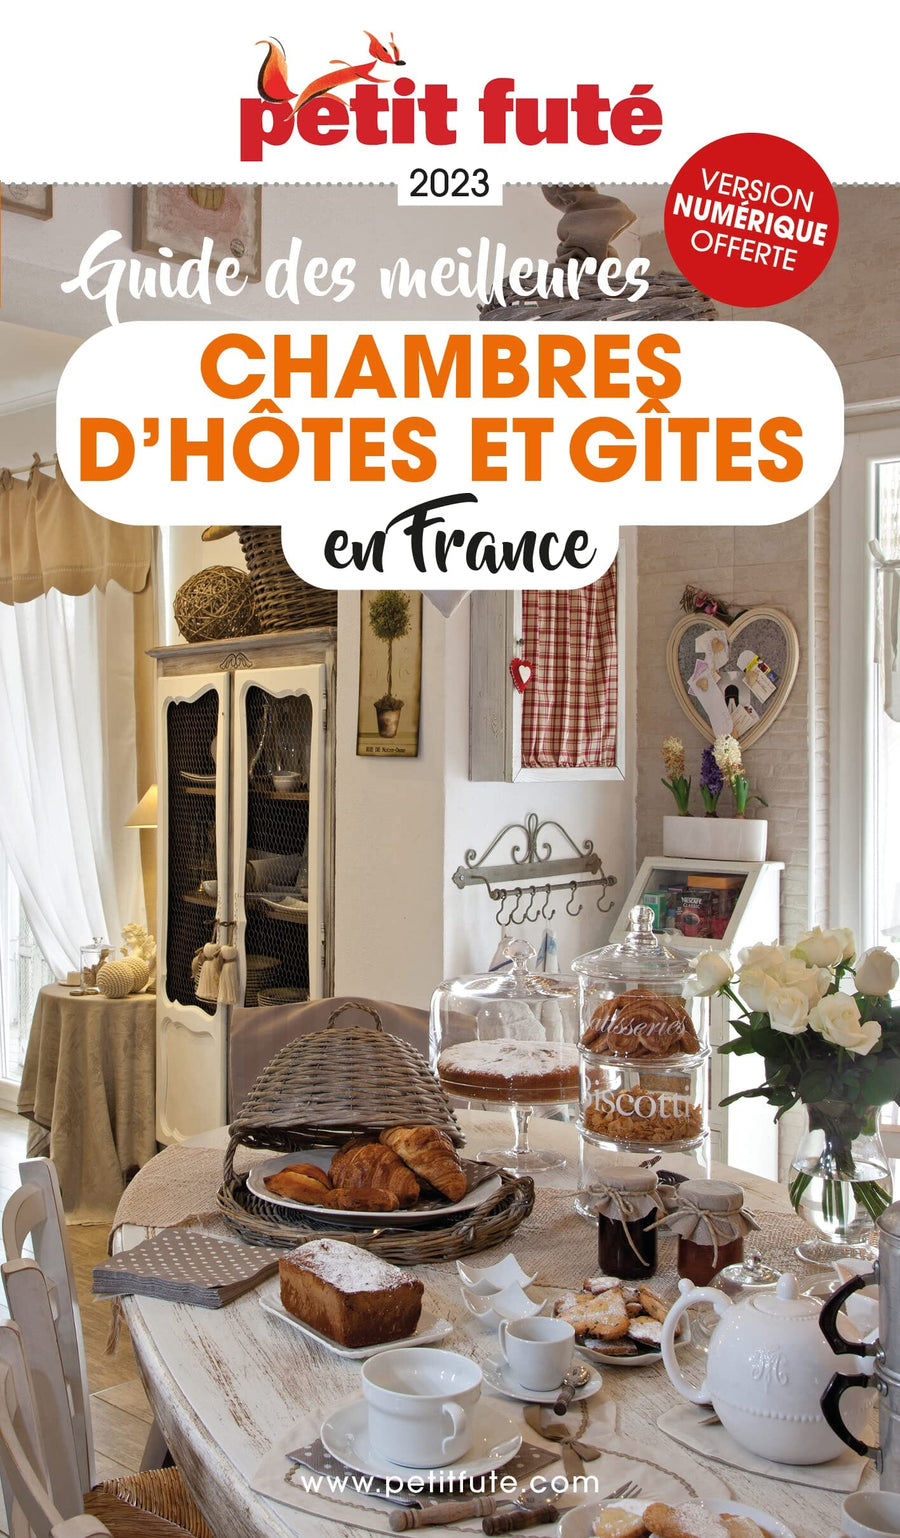 Guide pratique - Les meilleures chambres d'hôtes en France 2023 | Petit Futé guide de voyage Petit Futé 